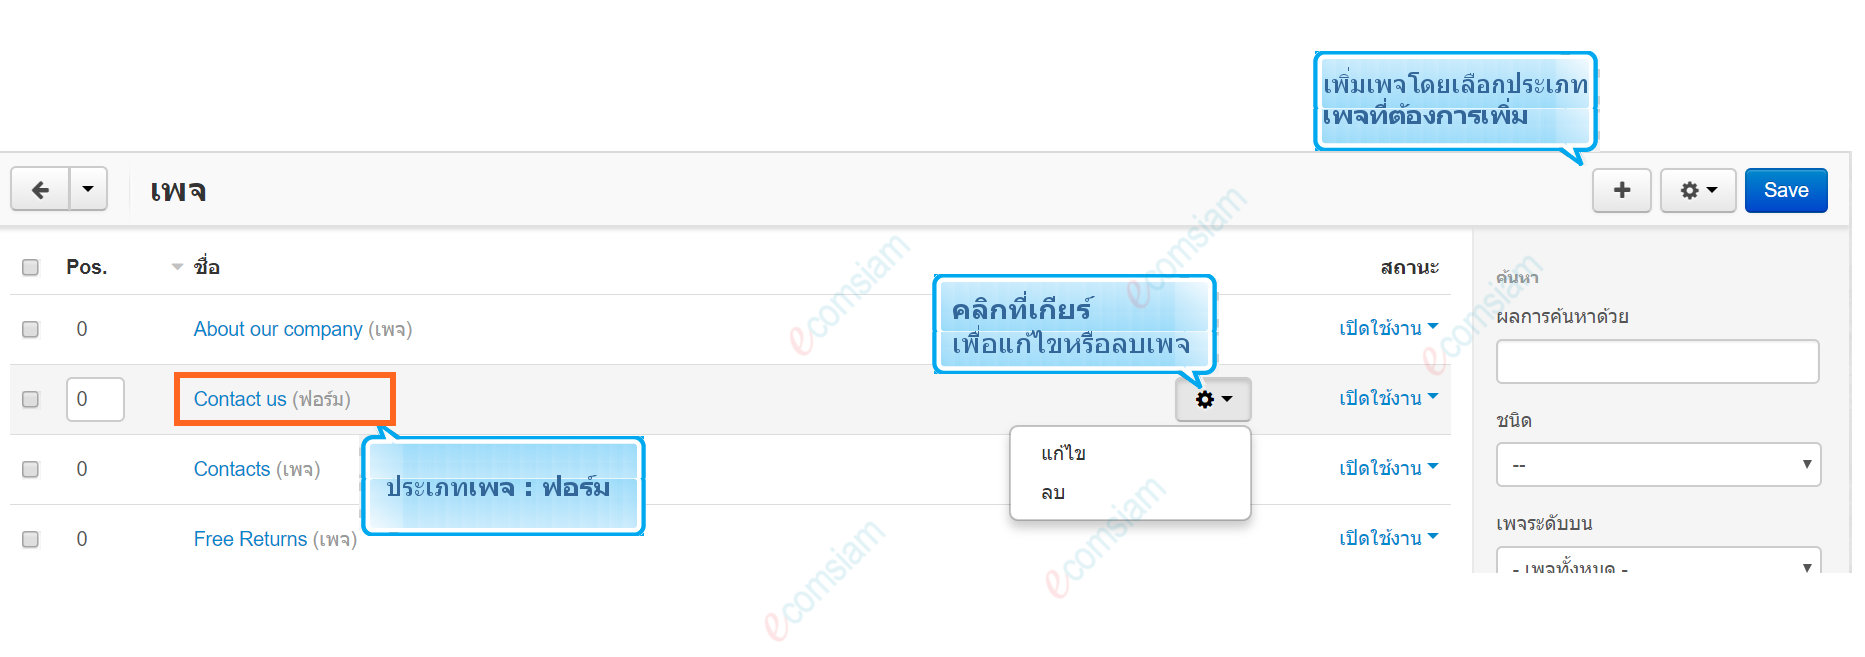 เว็บไซต์สำเร็จรูปไทย - คู่มือร้านออนไลน์ - การจัดการร้านออนไลน์ -เว็บเพจ pages ฟอร์ม form